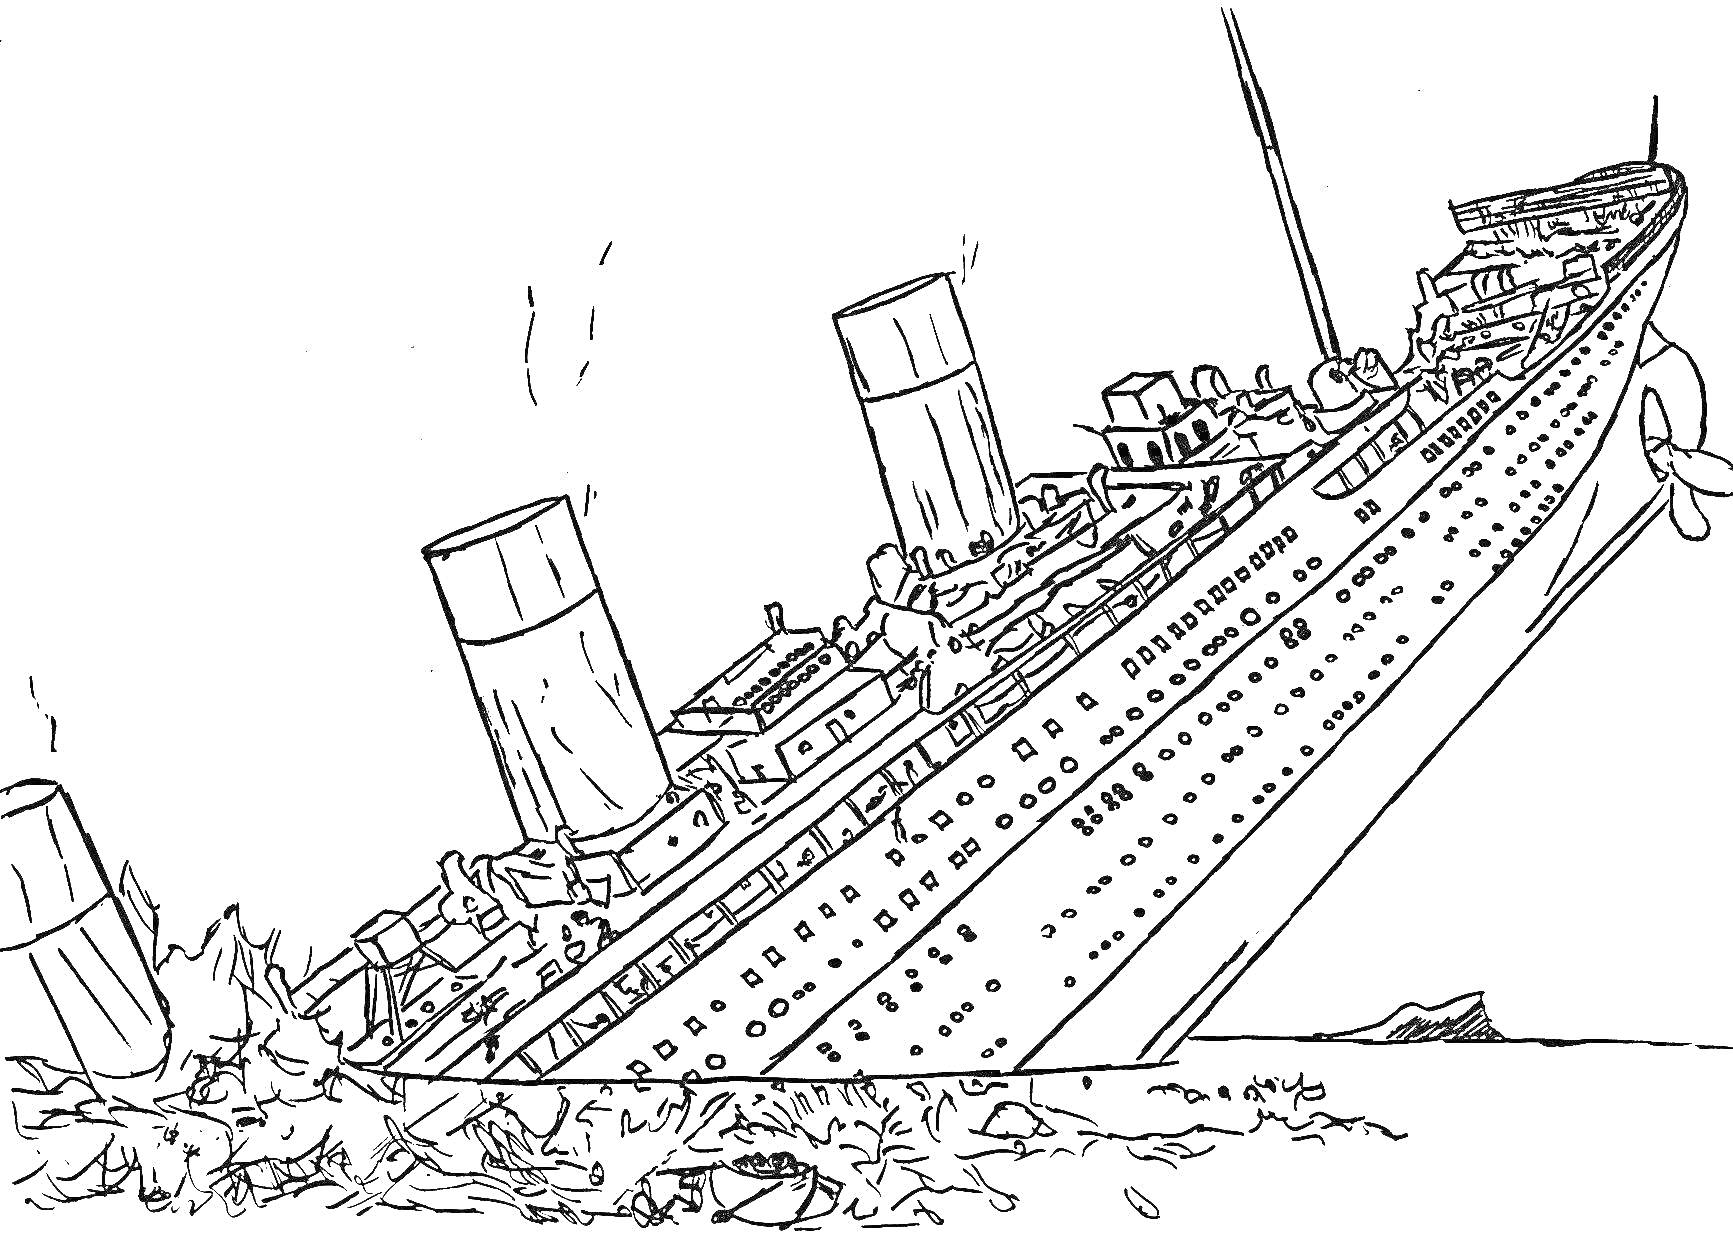 Корабль Титаник в момент крушения с наклоном на левый борт, два дымохода, видны части палубы и надстройки, верхушка айсберга